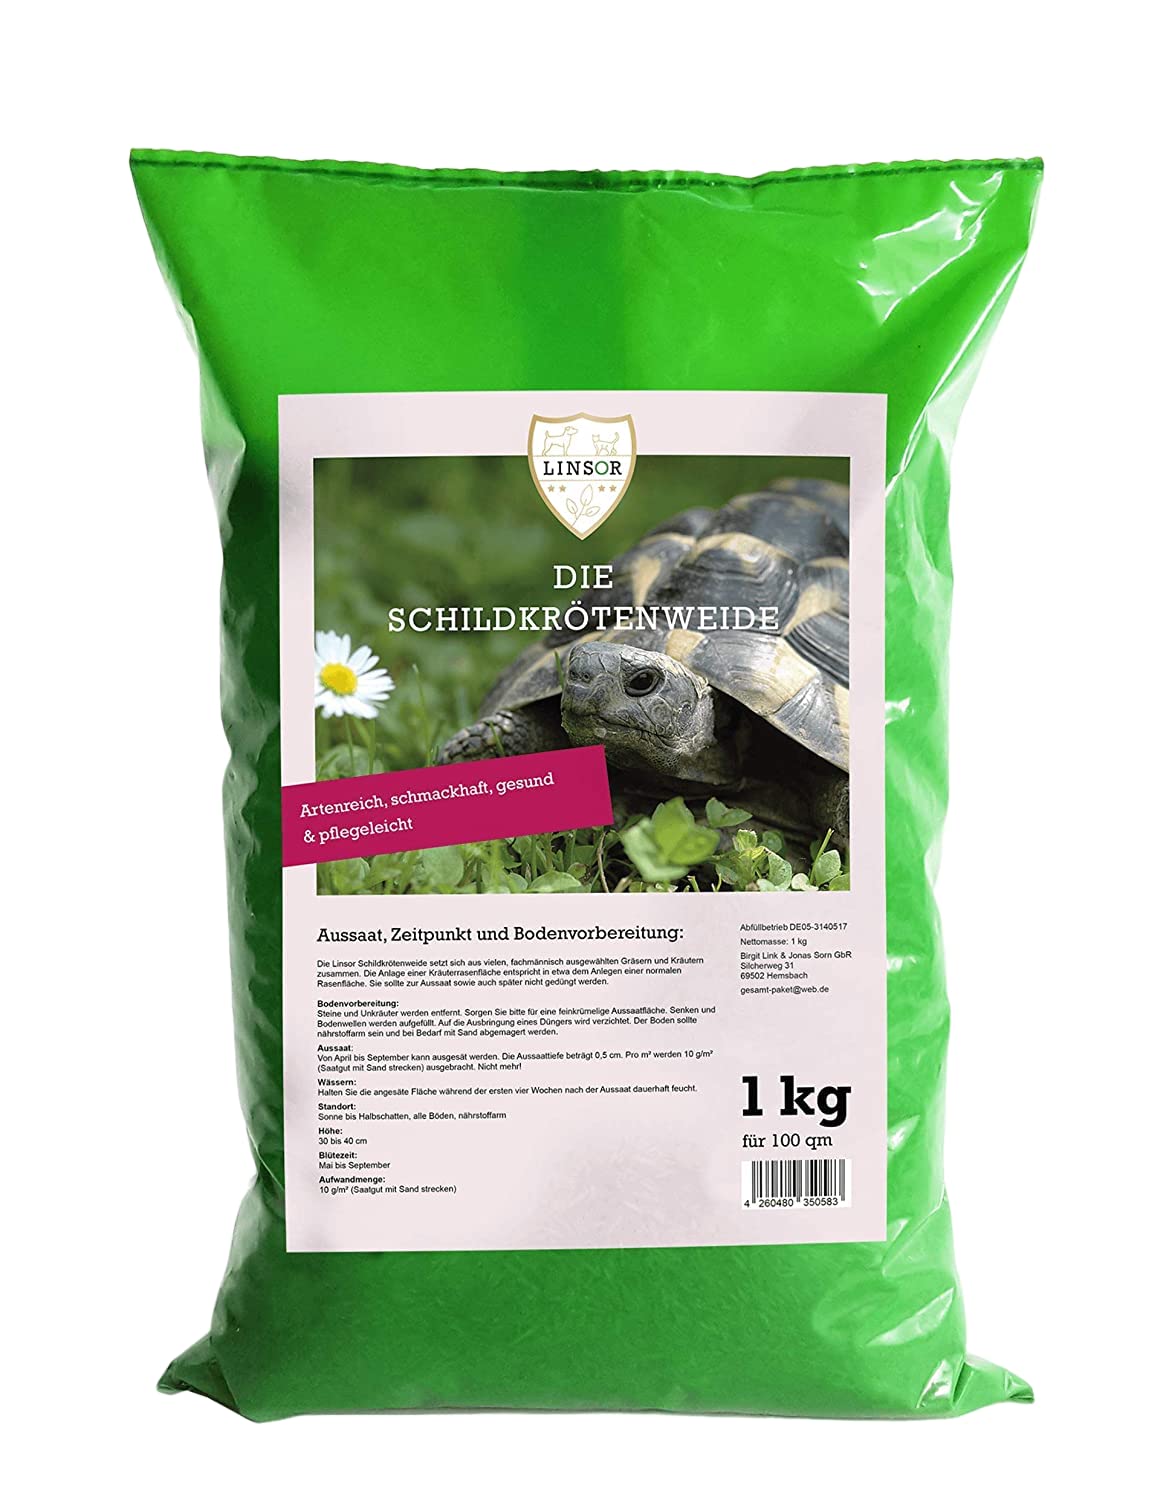 Linsor Schildkrötenweide, Futterpflanzen für Landschildkröten, Wildkräuter, Saatgut Mischung, 1kg für 100m²